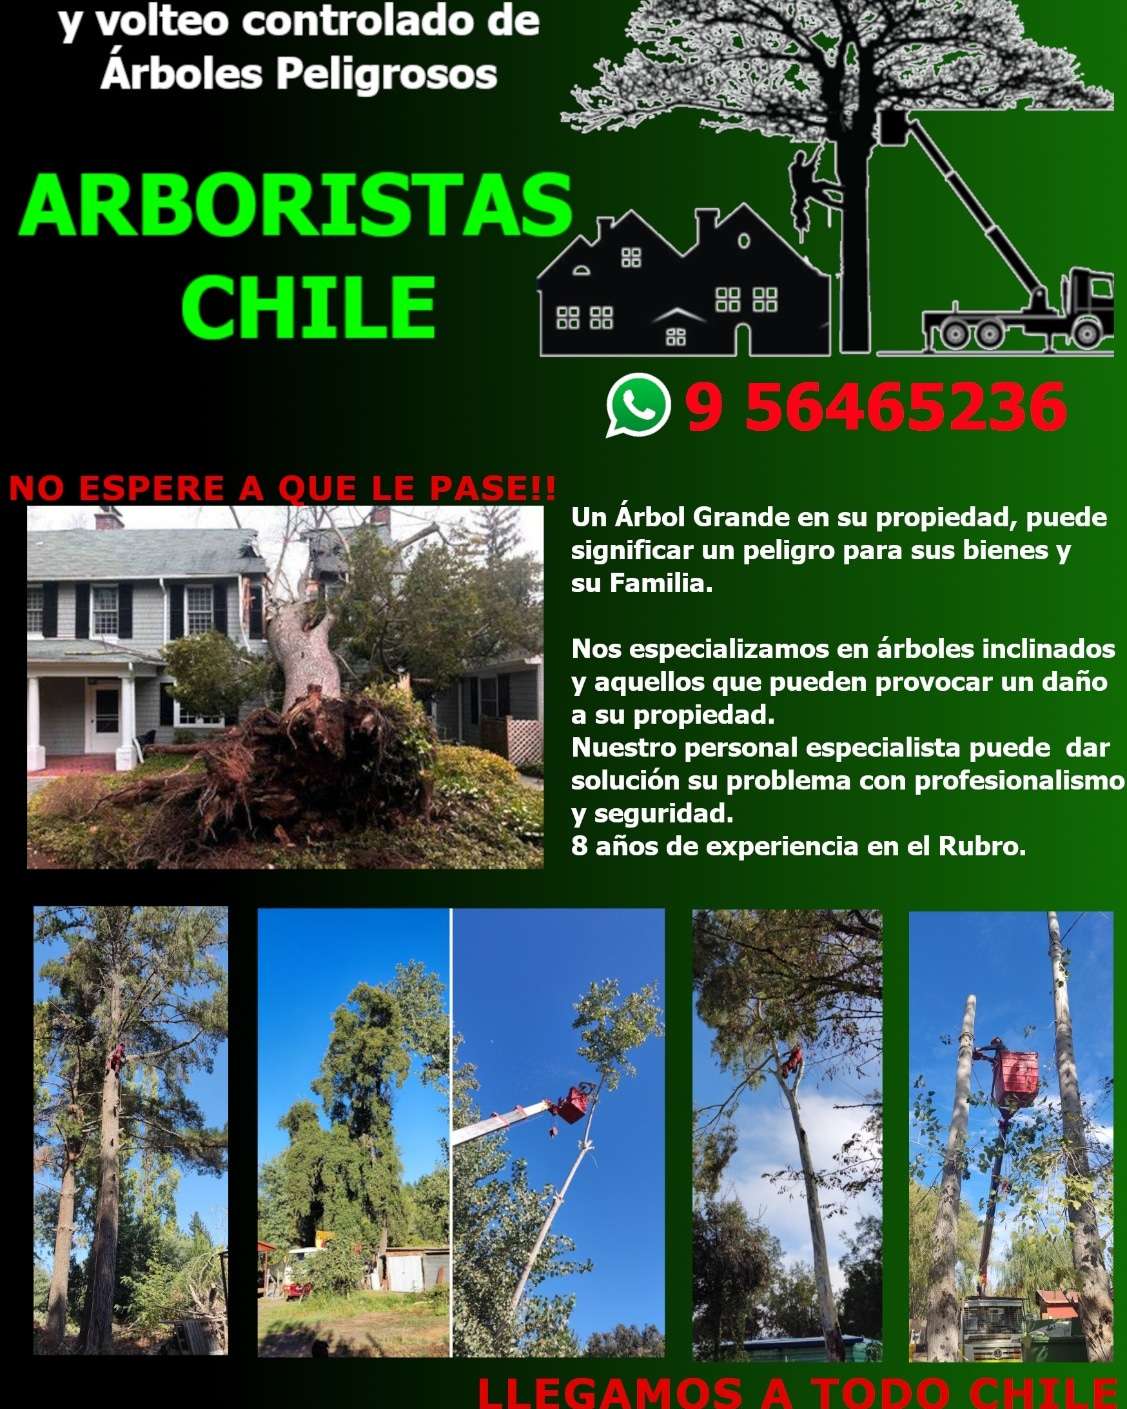 Arboristas Chile - Ñuble - Poda y mantenimiento de árboles